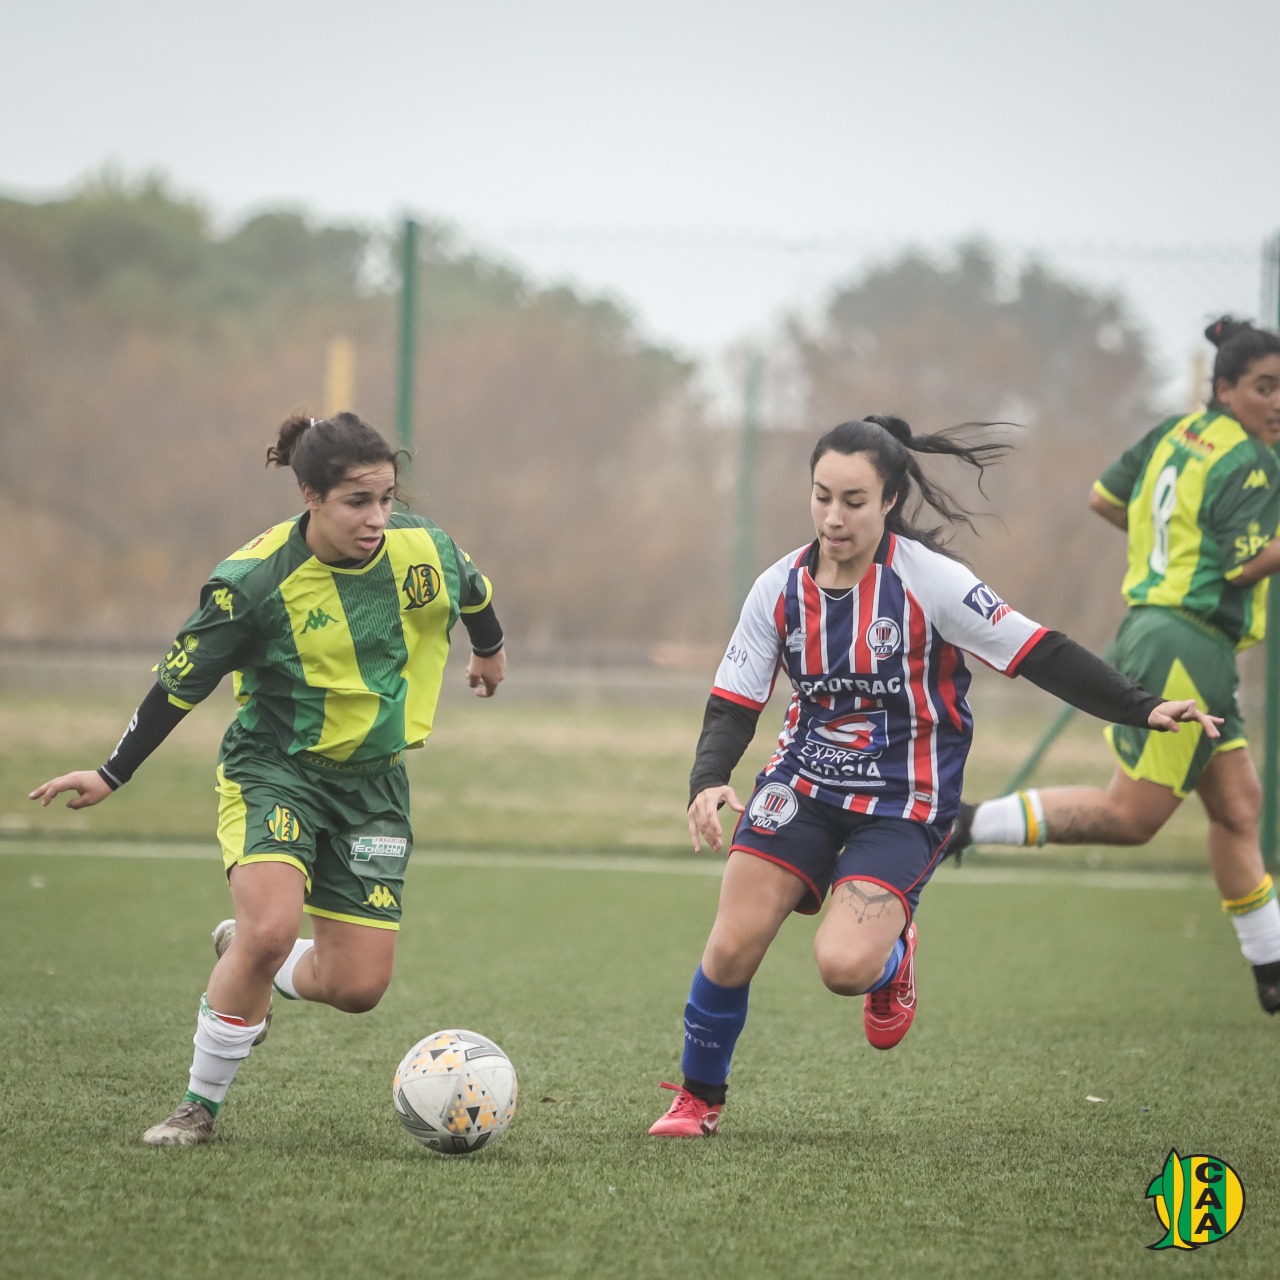 Fútbol femenino: las chicas van por el sueño de competir en AFA